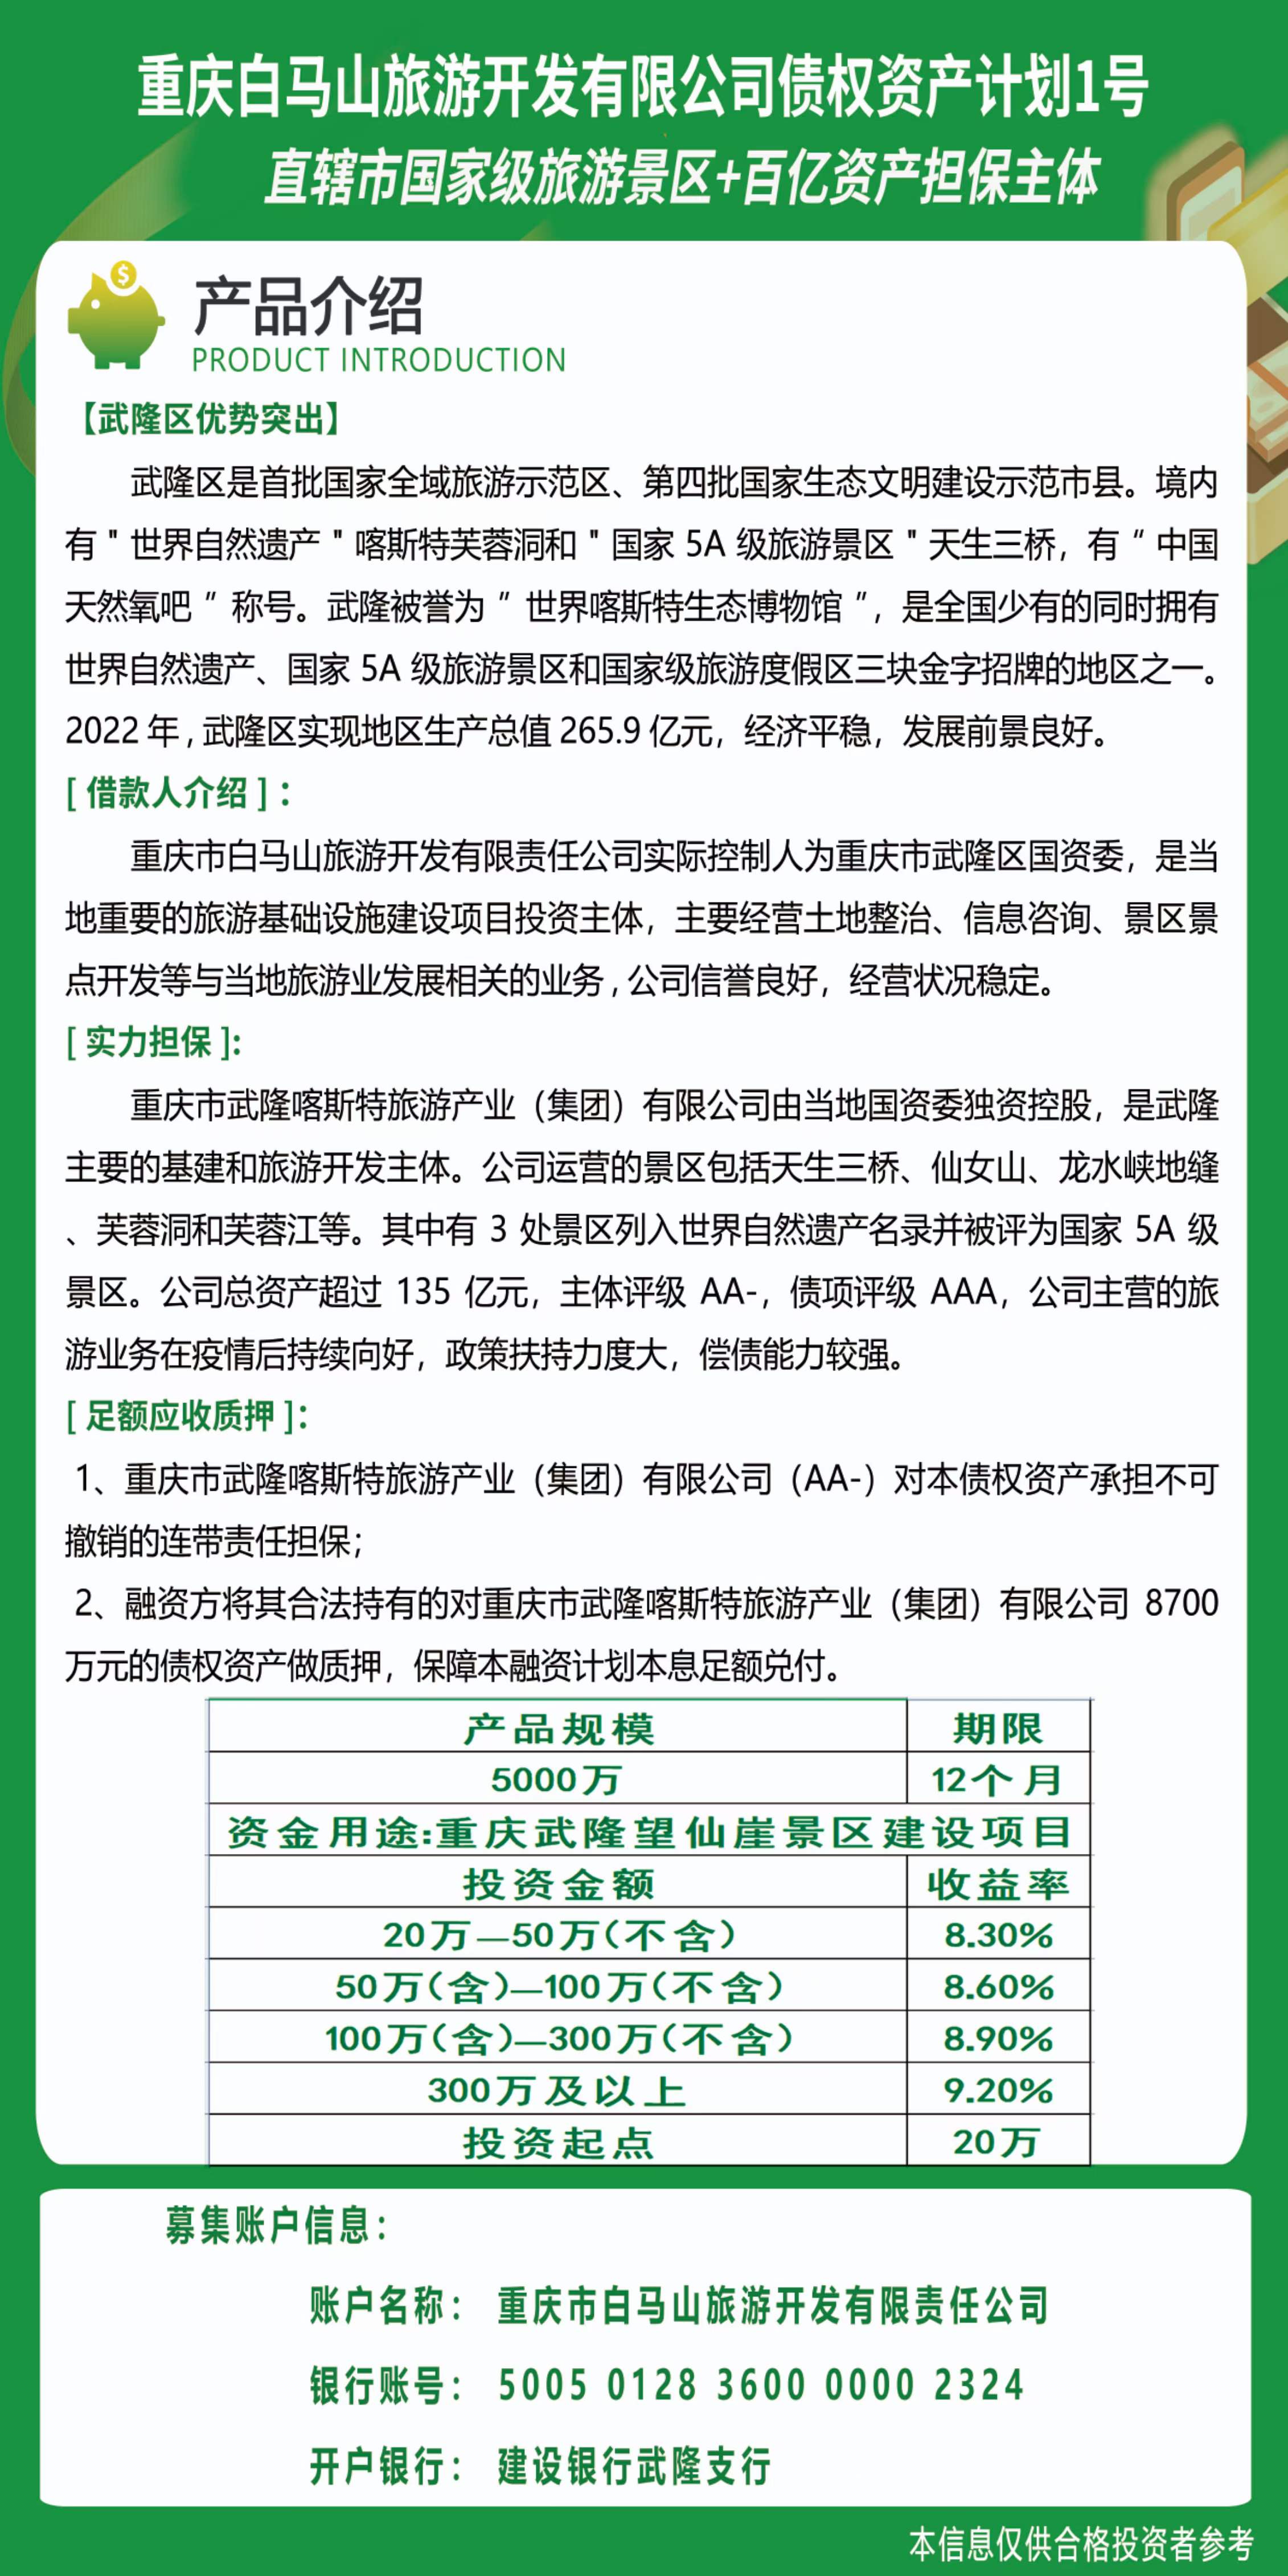 重庆市白马山旅游开发有限责任公司债权资产计划1号